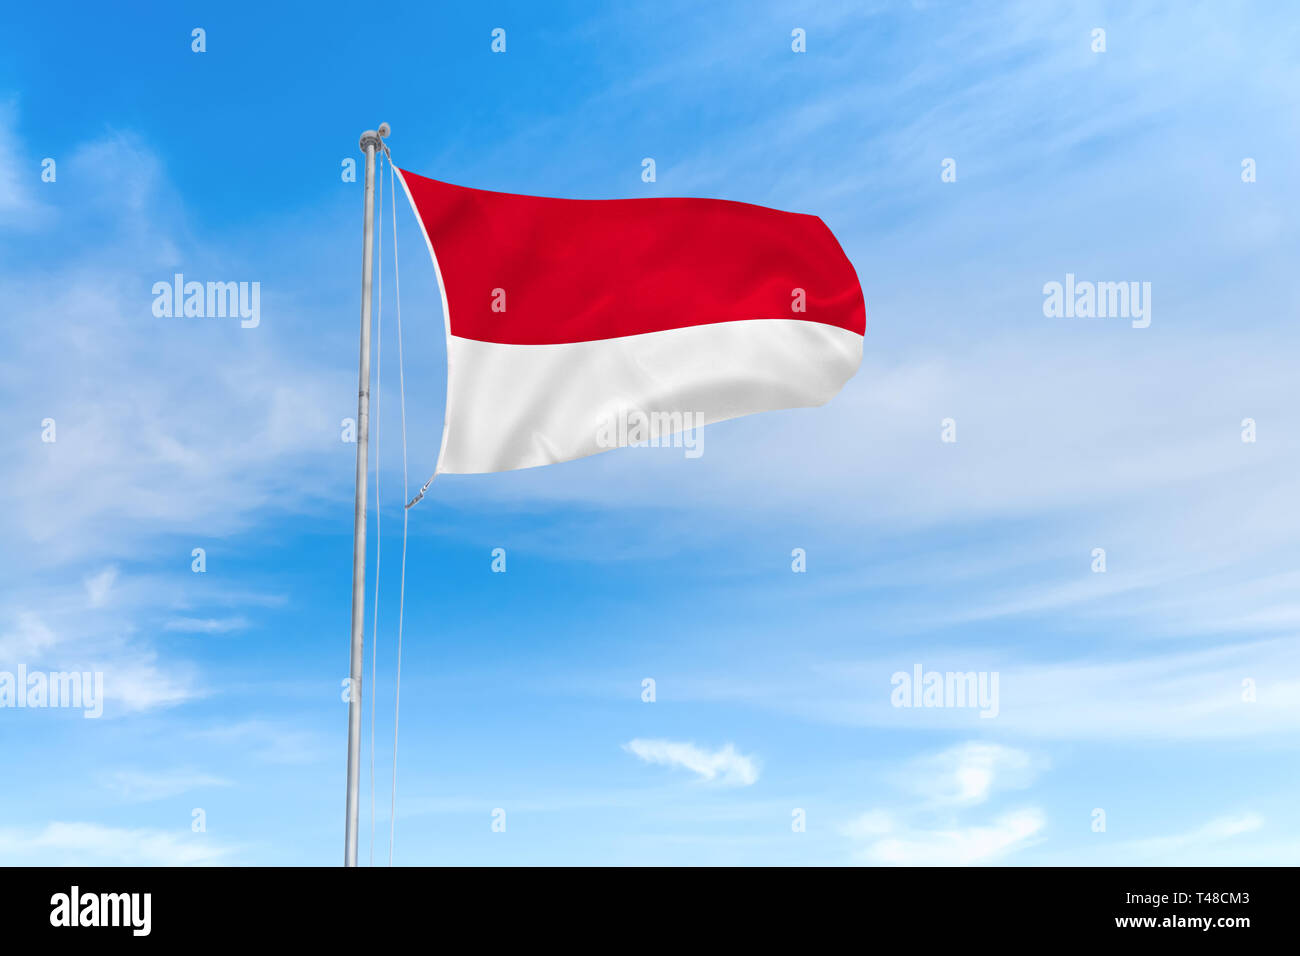 Indonesischen Flagge weht im Wind über blauen Himmel Hintergrund Stockfoto